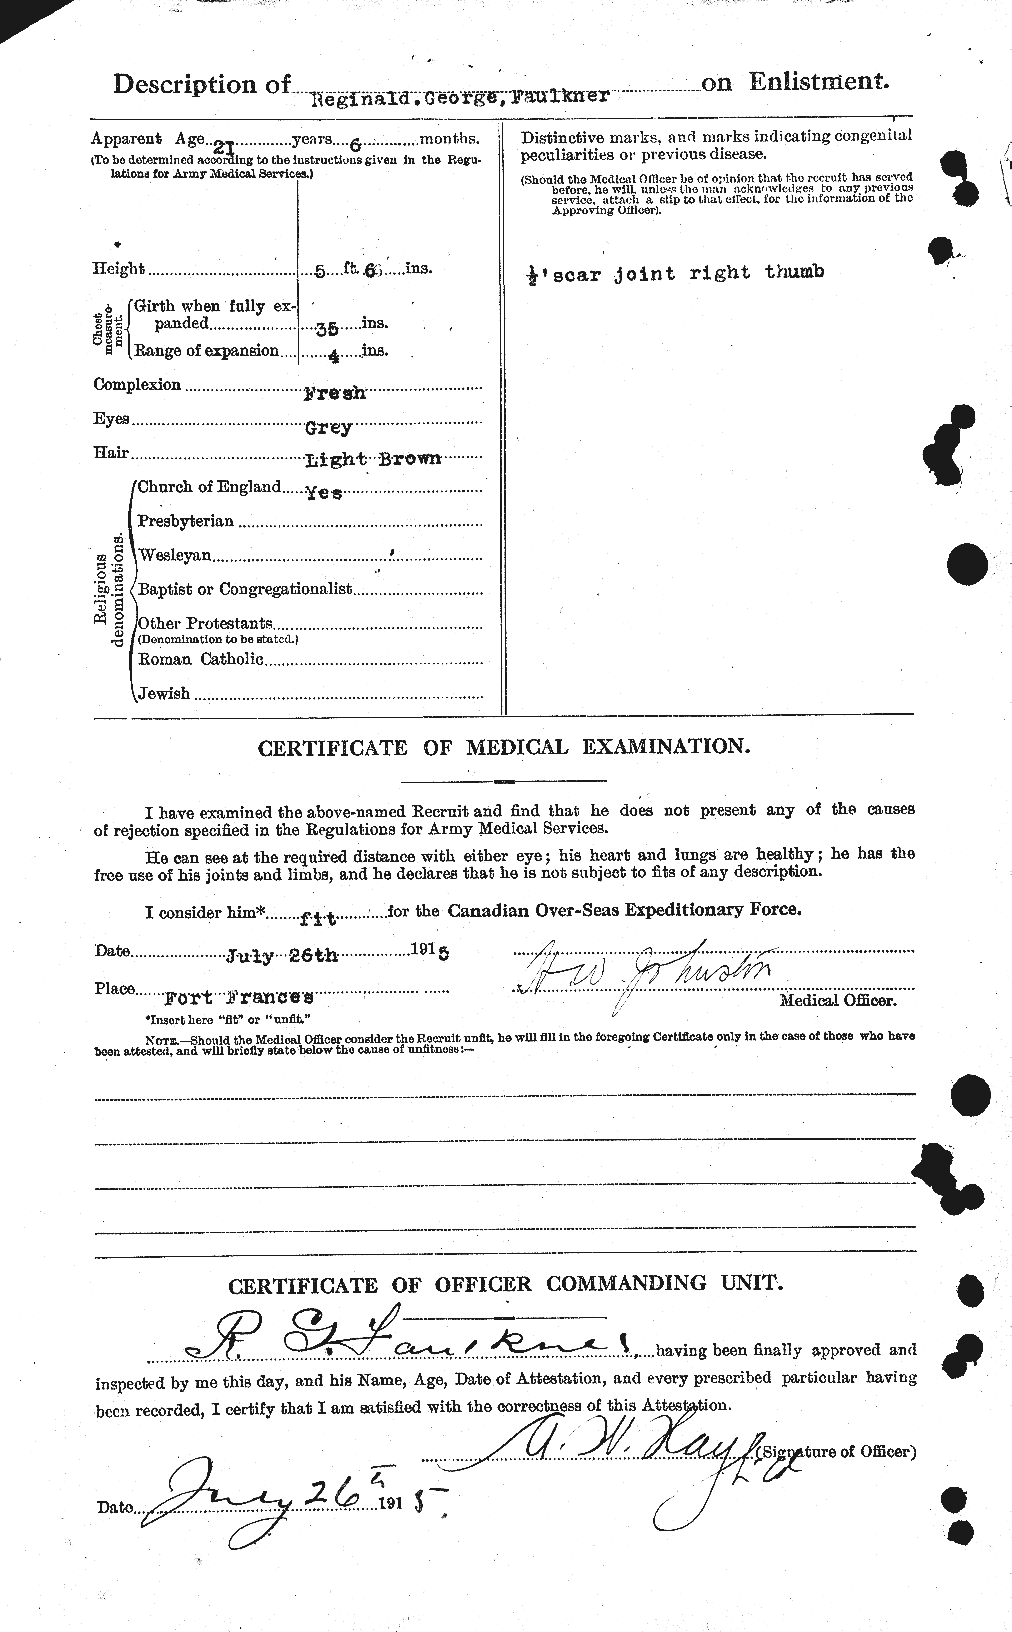 Dossiers du Personnel de la Première Guerre mondiale - CEC 321300b